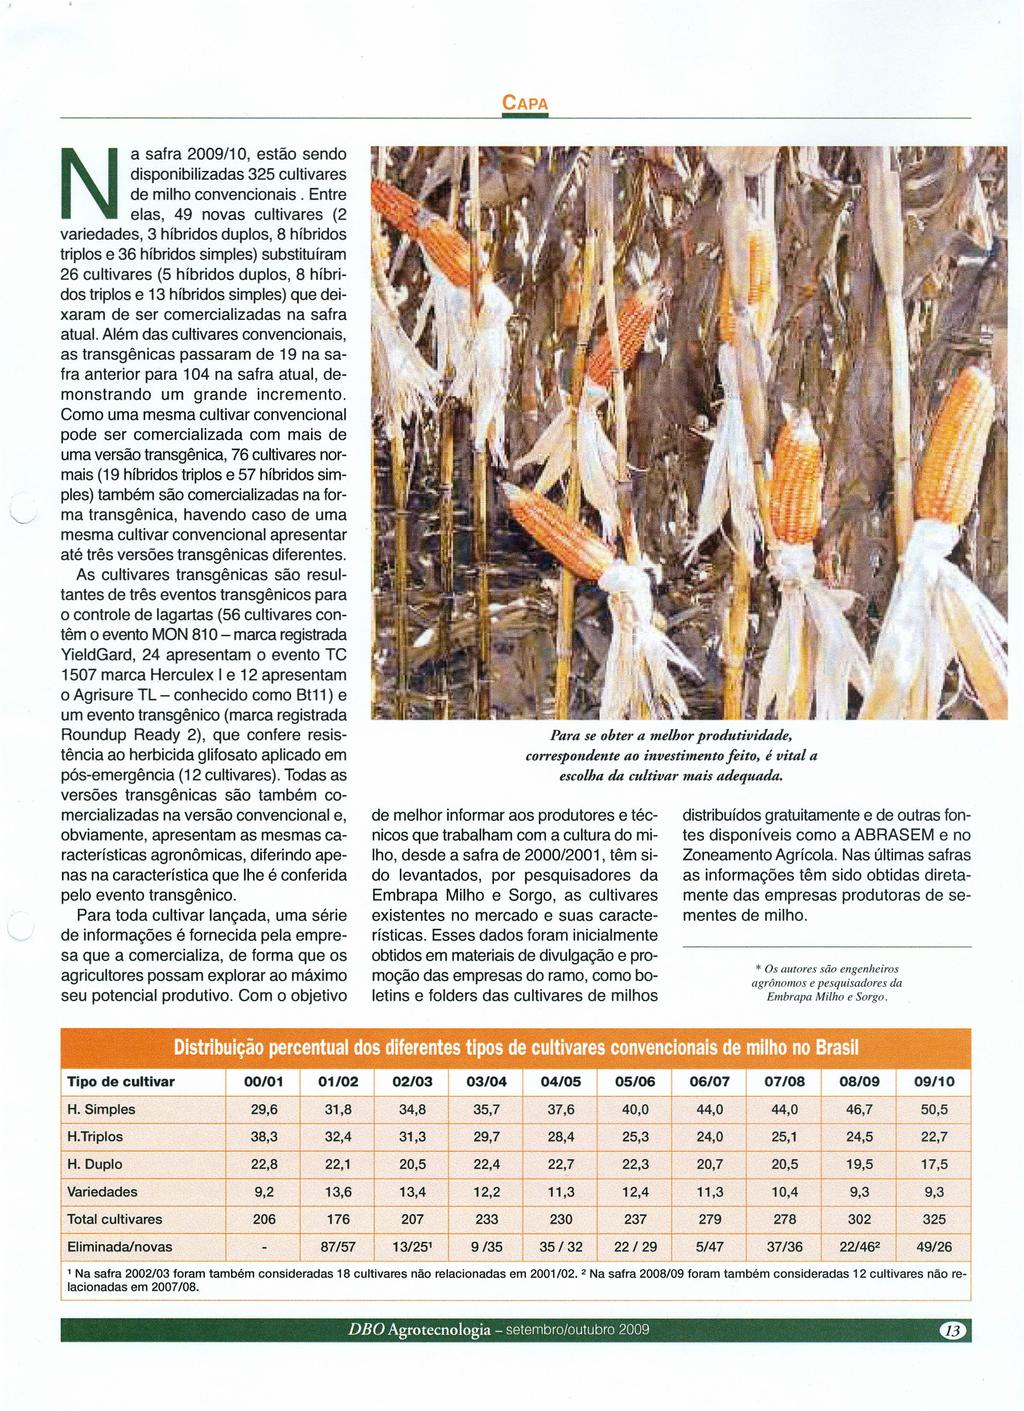 a safra /10, estão sendo disponibilizadas 325 cultivares de milho convencionais.